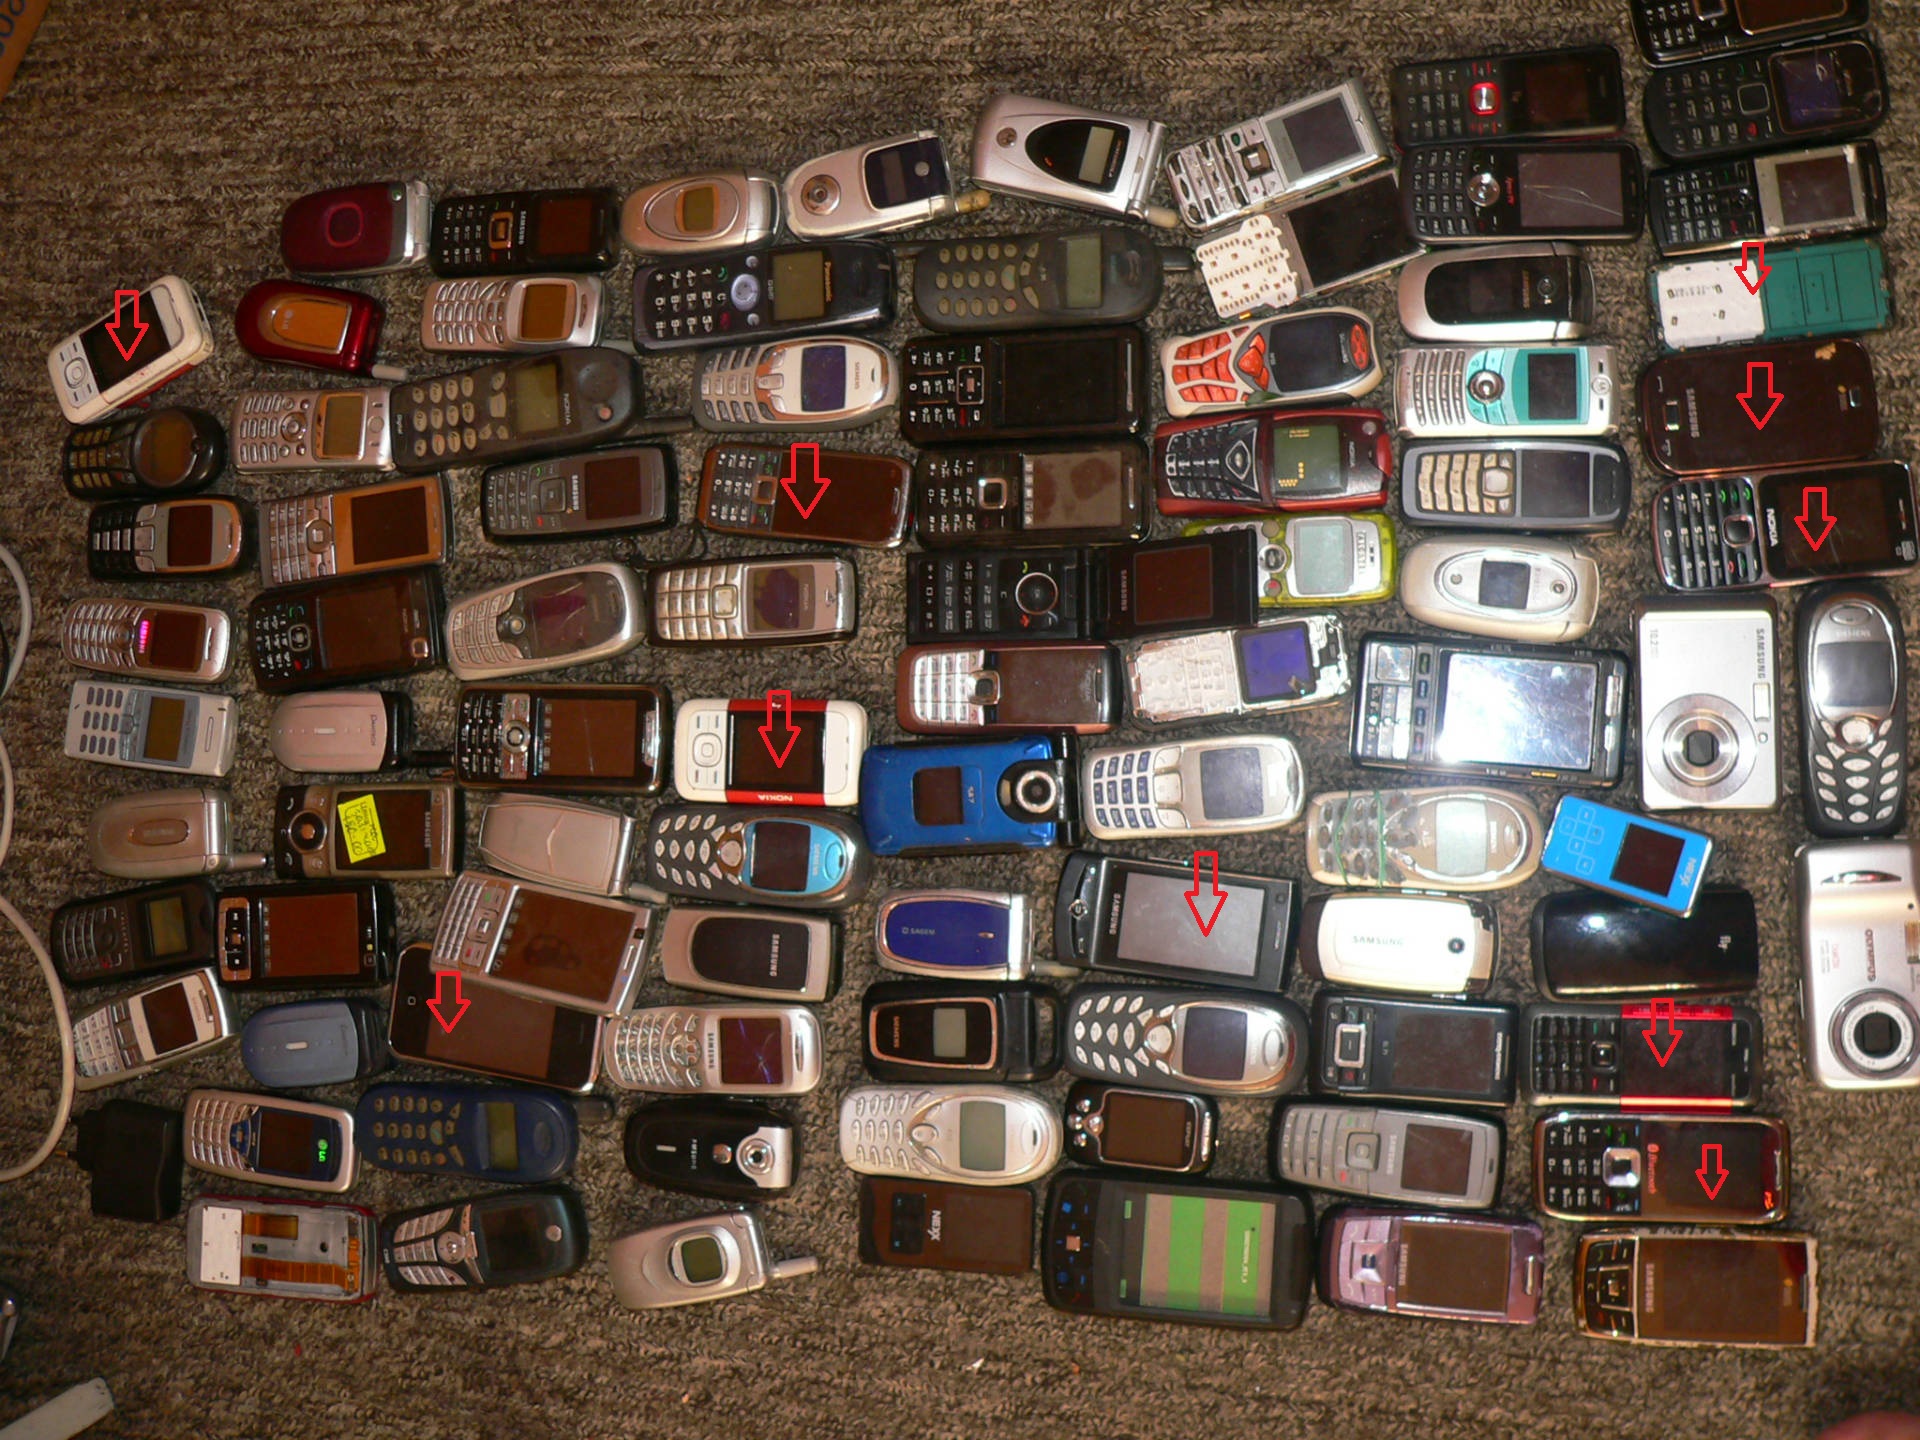 Бу телефоны г. Много старых смартфонов. Б/У телефоны. Коллекция старых телефонов. Куча разбитых телефонов.